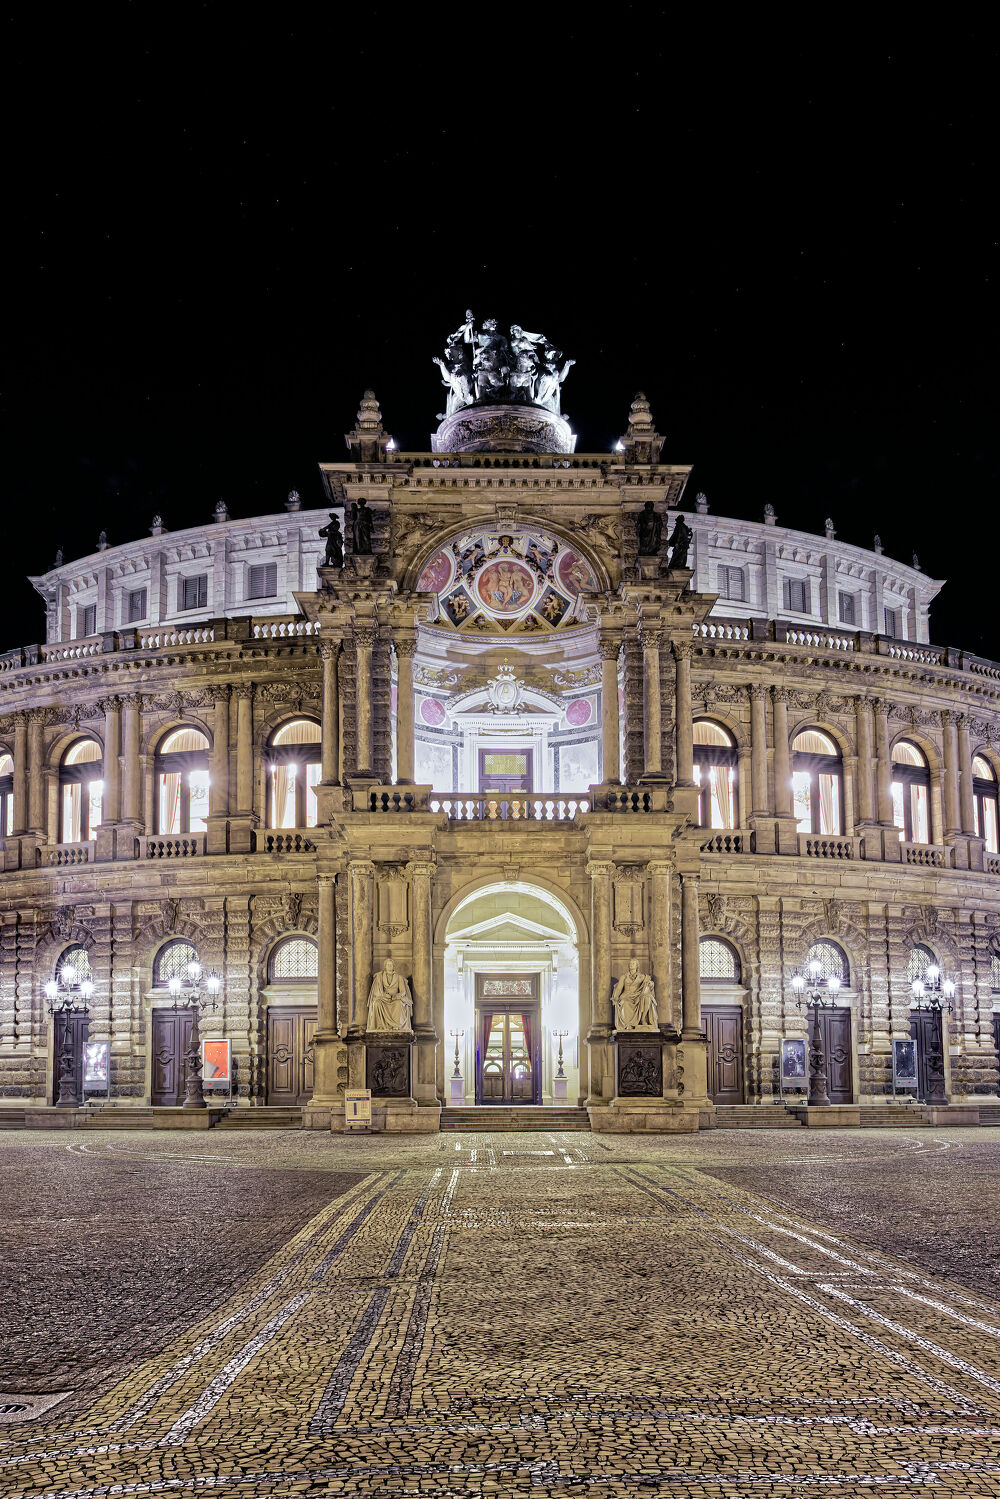 Bild mit Architektur, Gebäude, Dresden, Semperoper, Sachsen, Staatsoper, Saxony